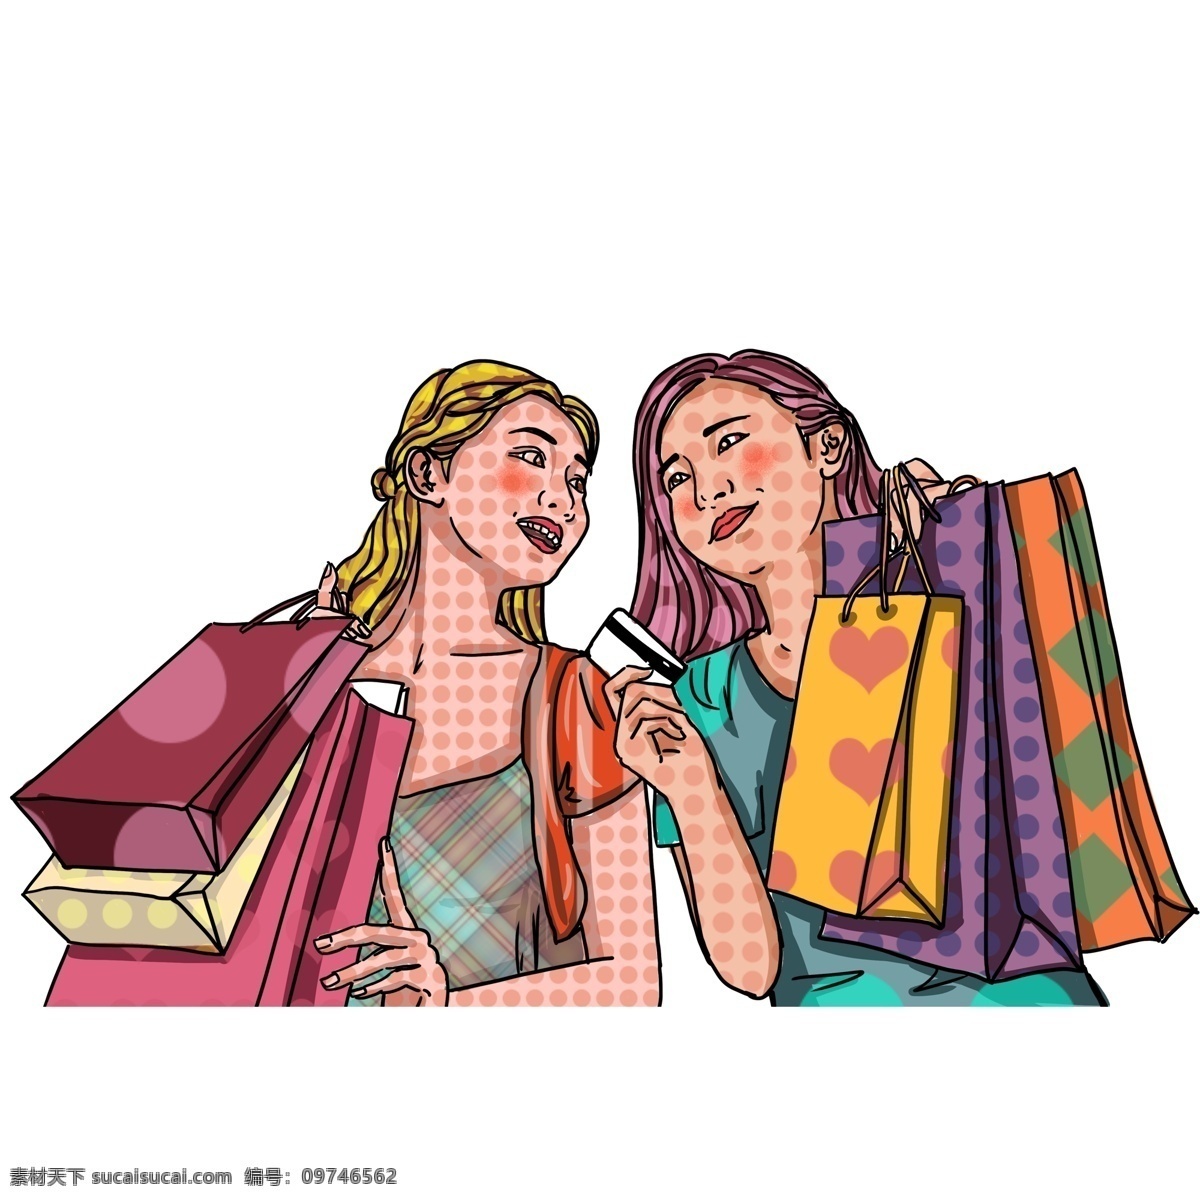 彩绘 波普 风 三八节 一起 购物 母女 俩 波普风 女性 人物 妇女节 手绘 购物袋 信用卡